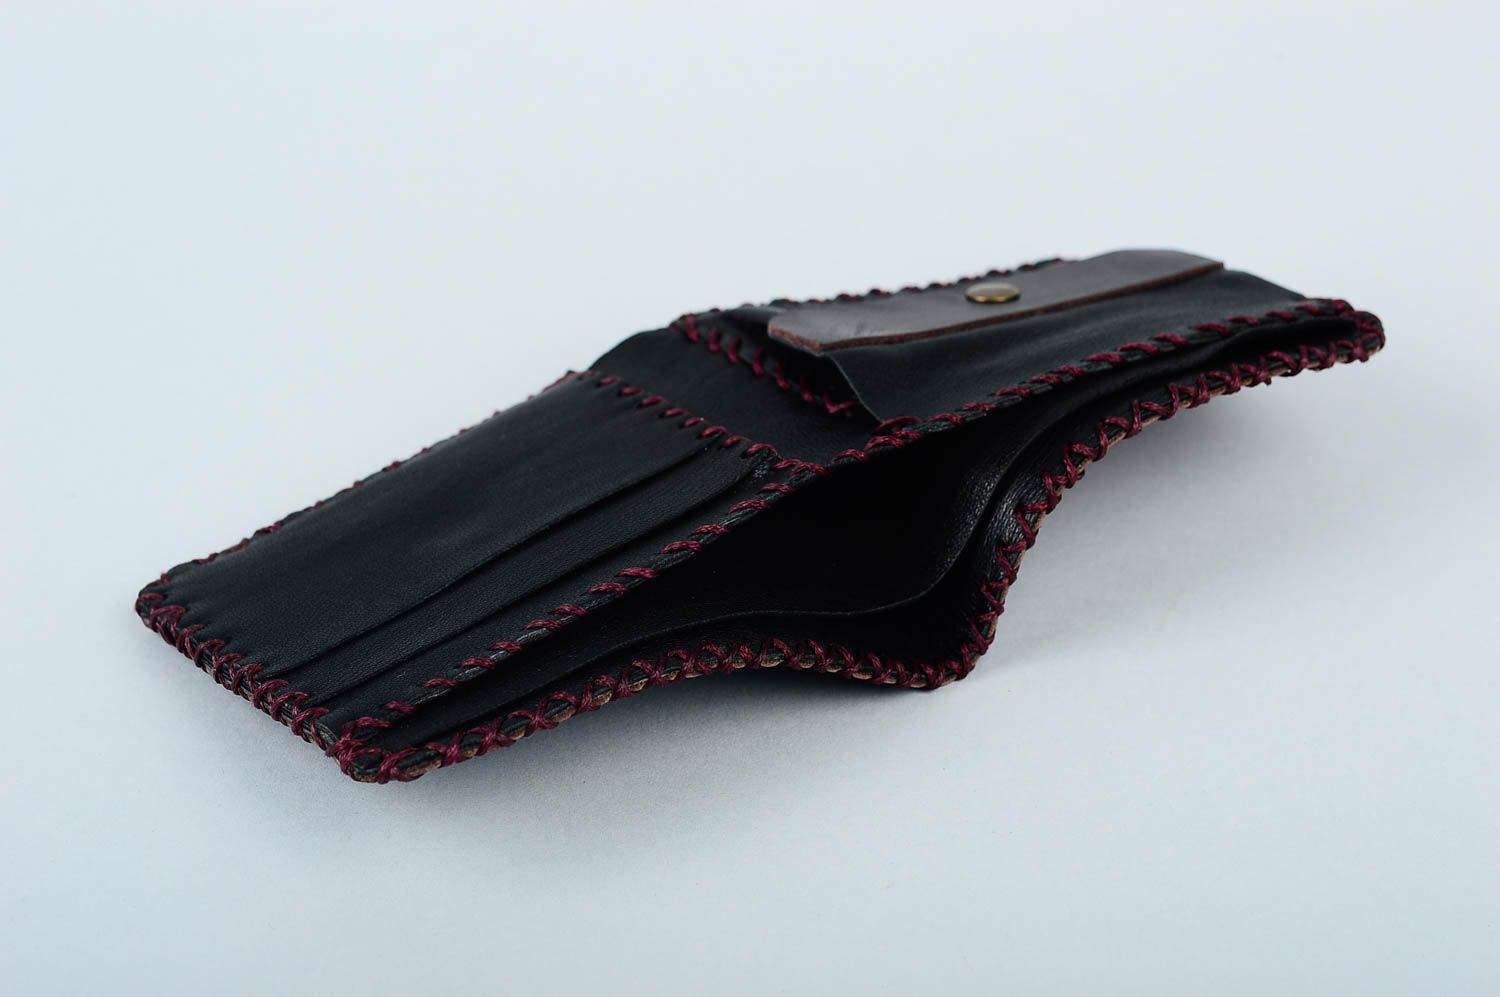 Мужское портмоне ручной работы кожаный кошелек аксессуар для мужчин авторский фото 3